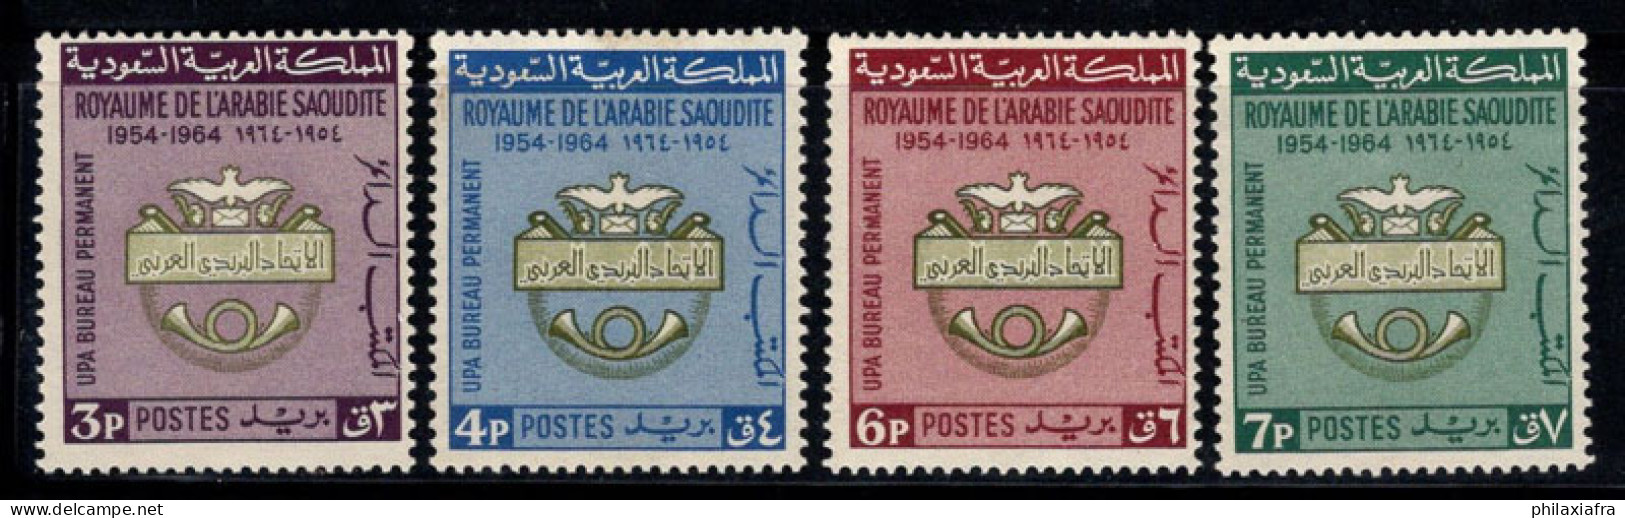 Arabie Saoudite 1966 Mi. 273-76 Neuf ** 60% Insigne De L'Union Postale Arabe - Saoedi-Arabië